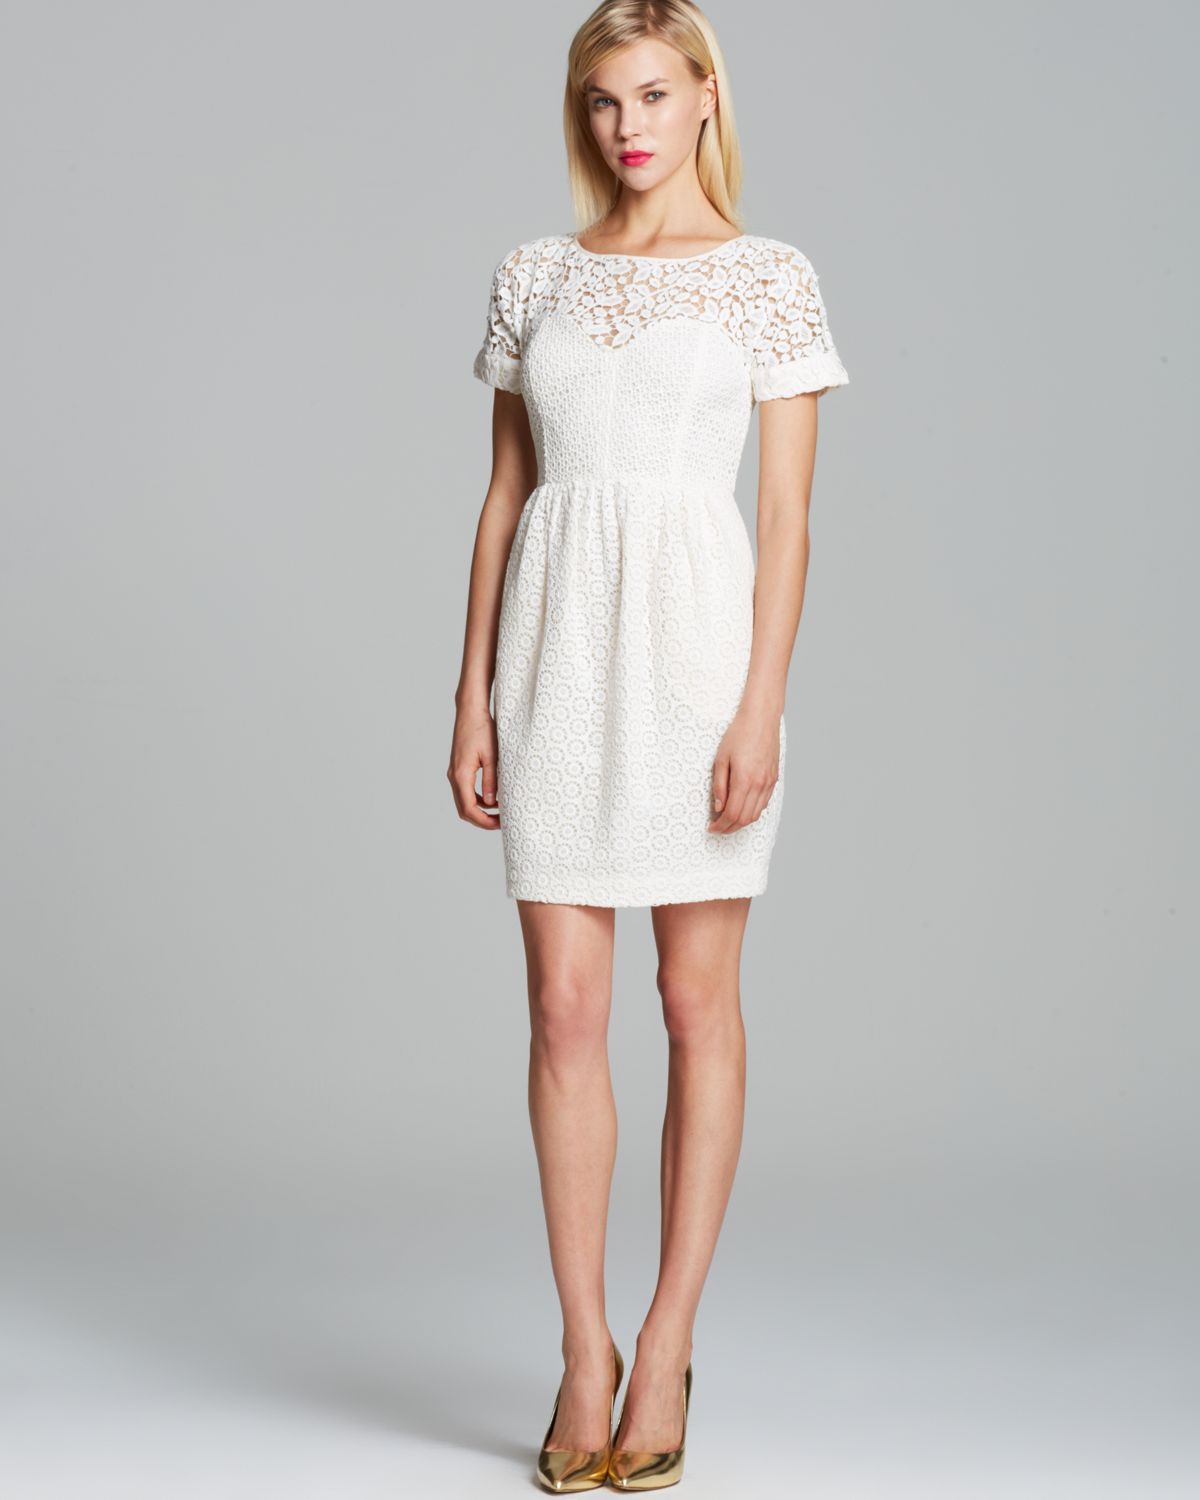 Lyst - Catherine Malandrino Dress Camilla Lace in White